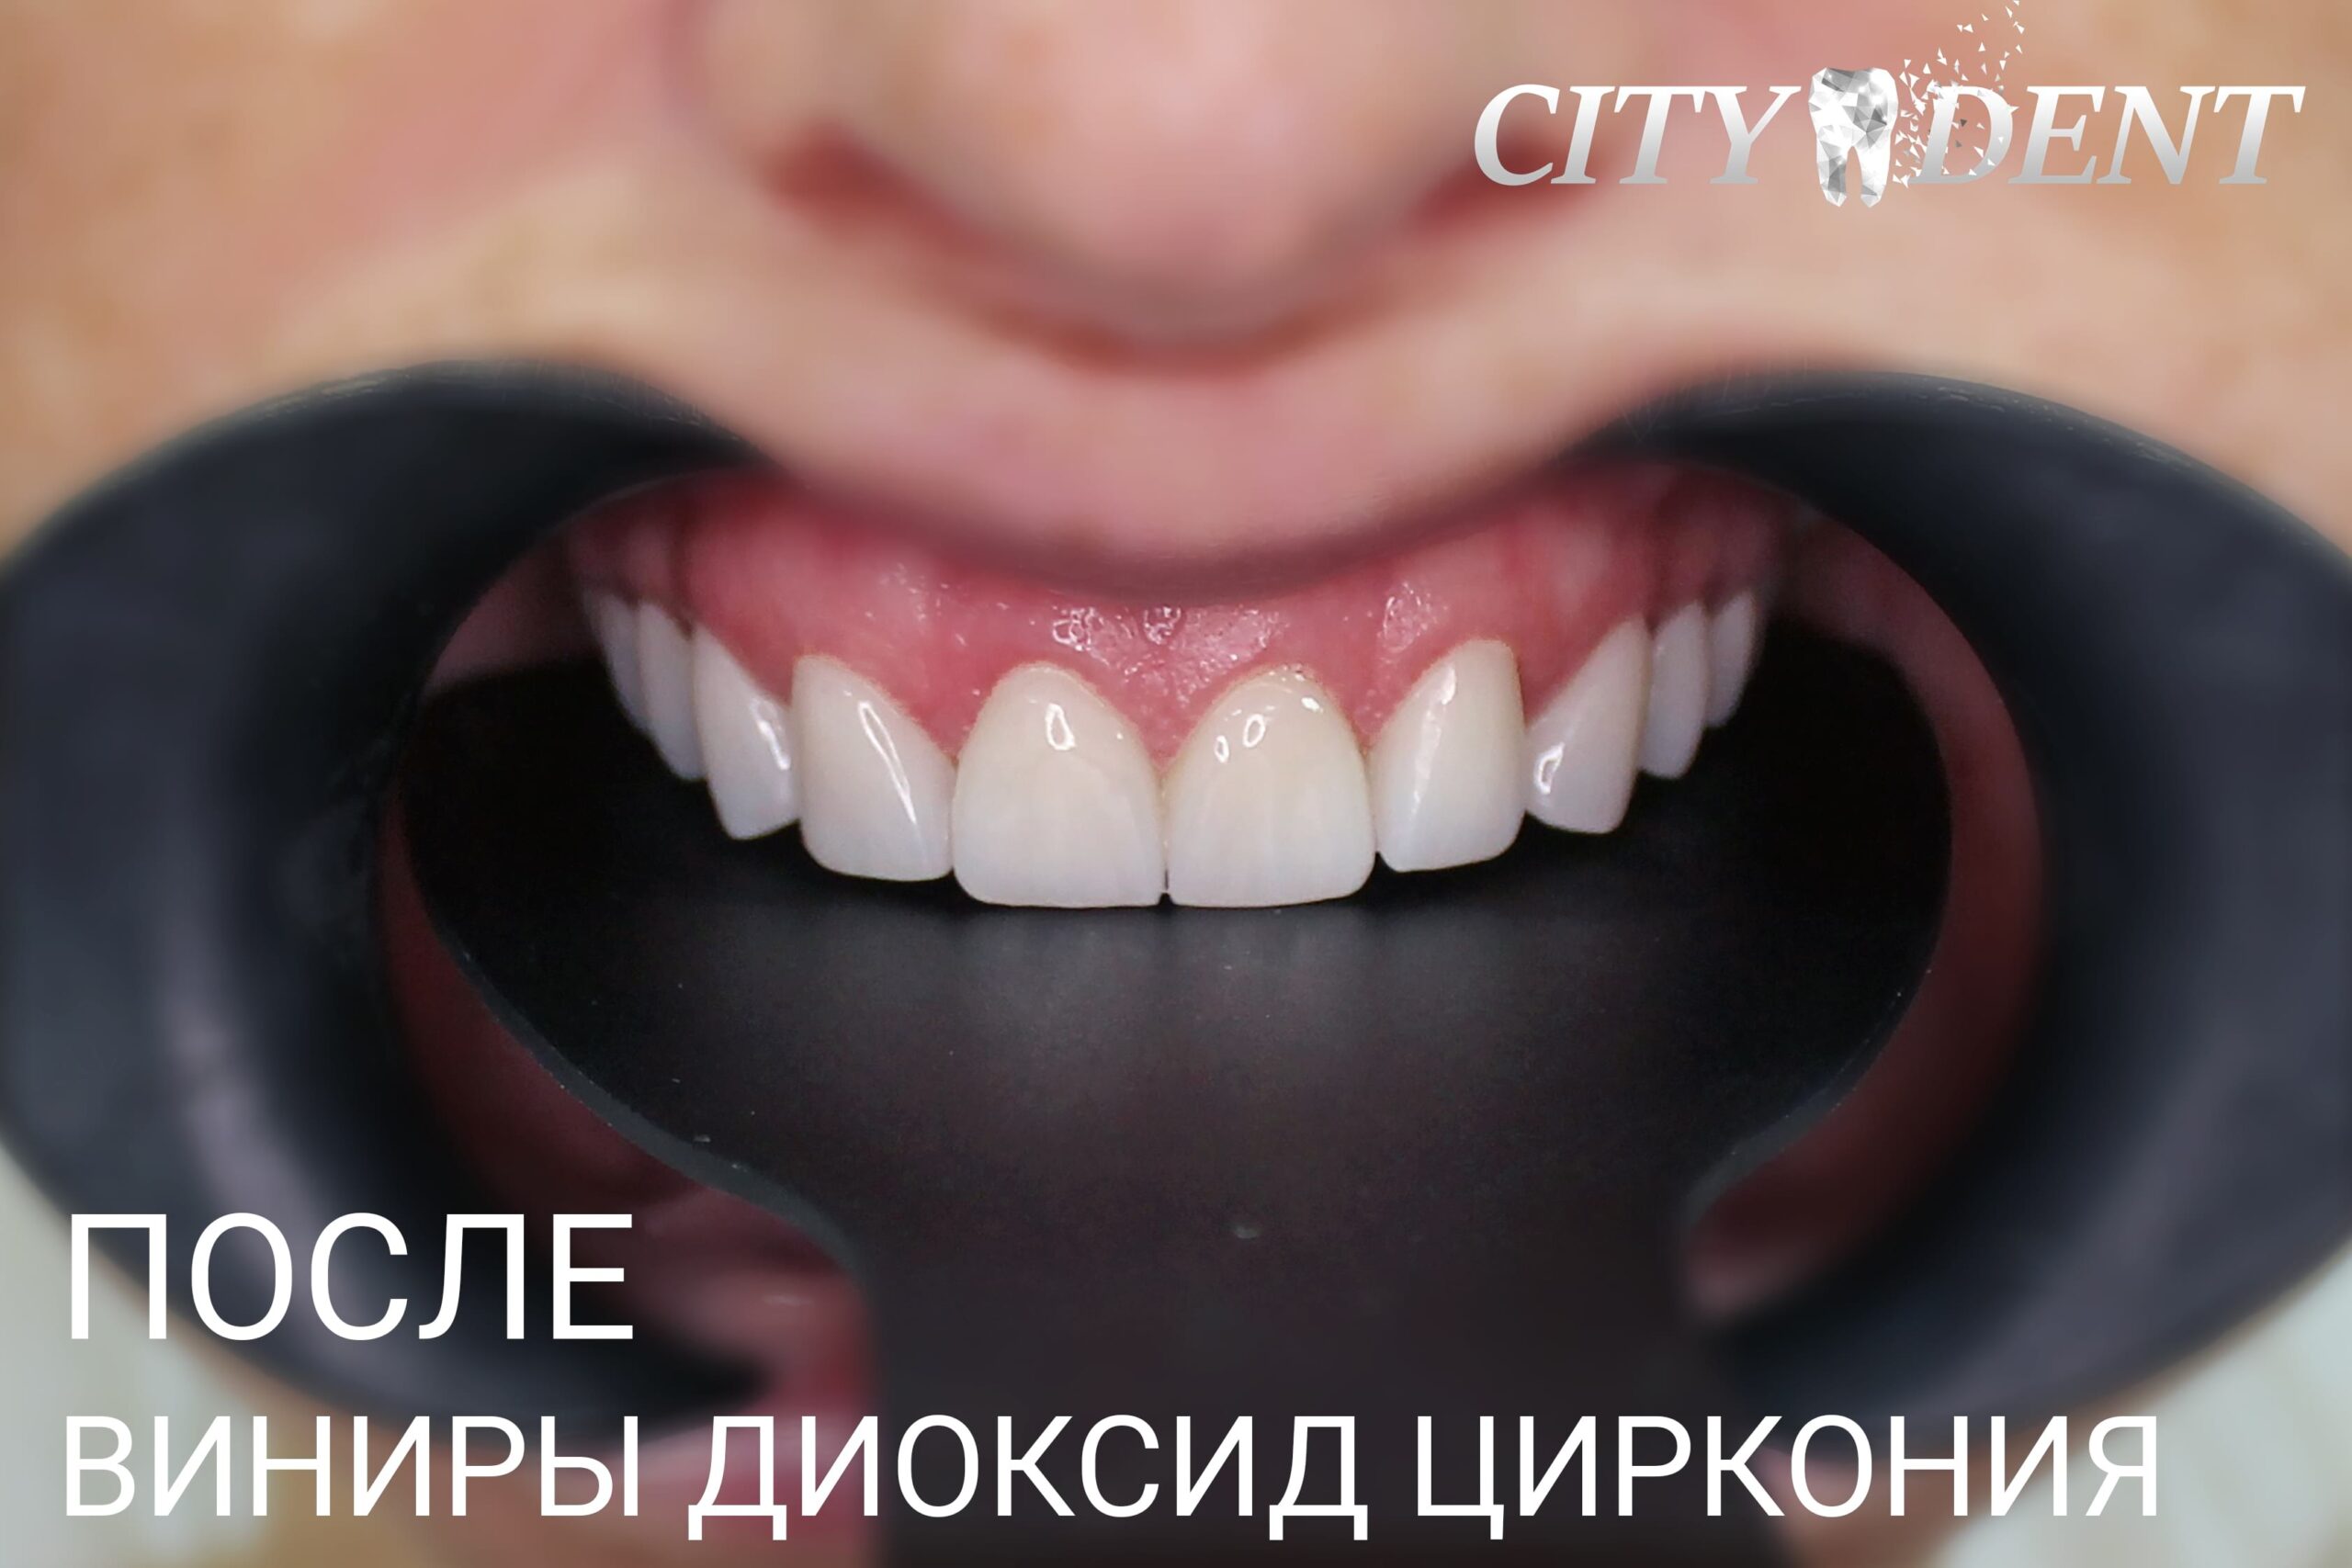 Реставрация после удаления зуба: восстановление улыбки и функциональности